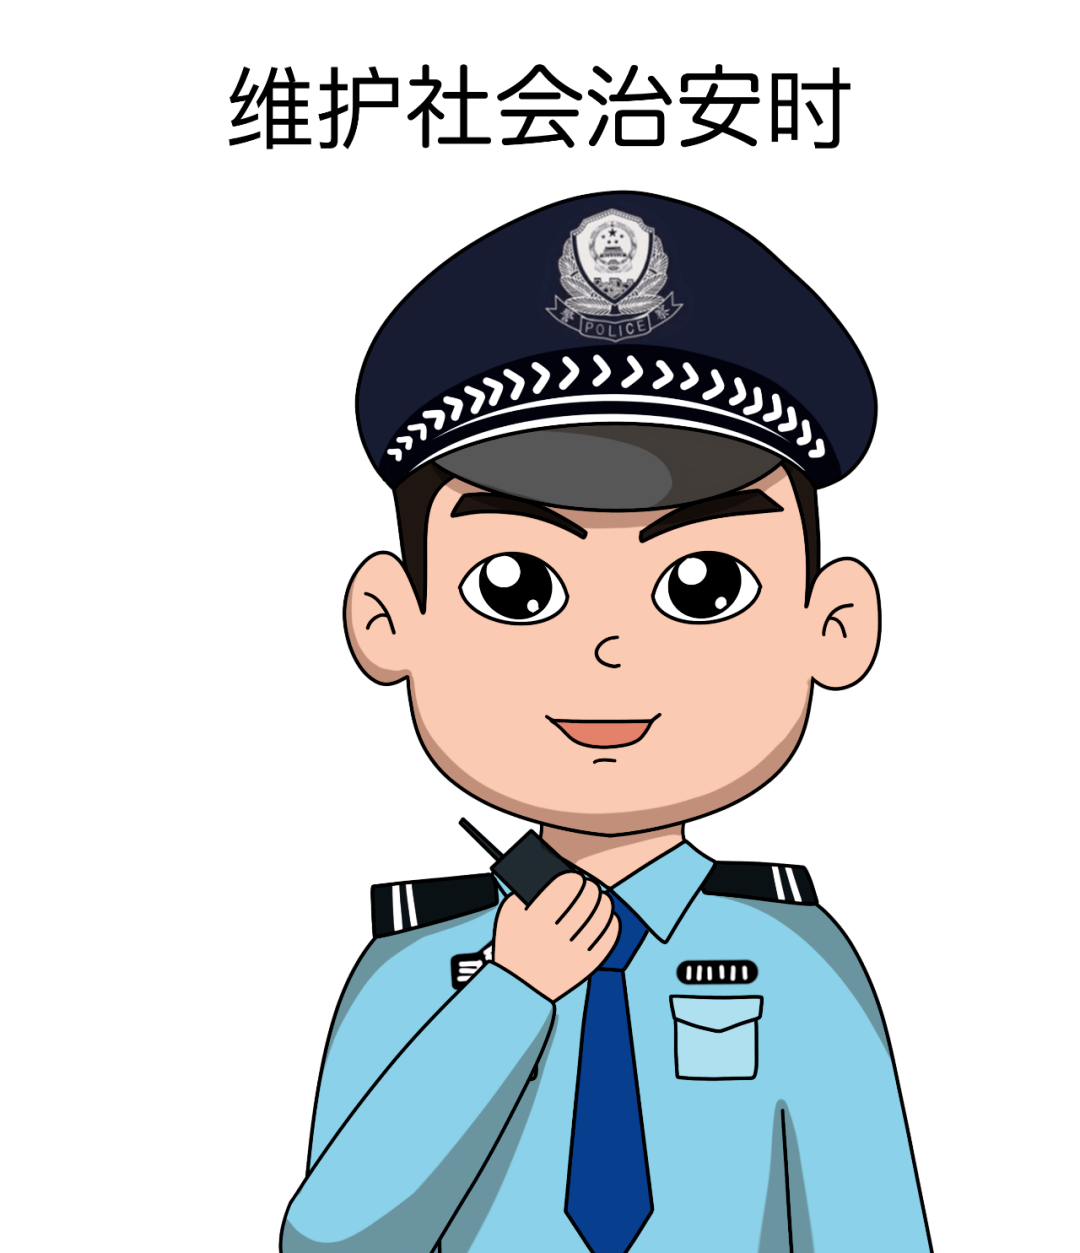 110警察节天津网警手绘小课堂之警察蜀黍的不同工作状态